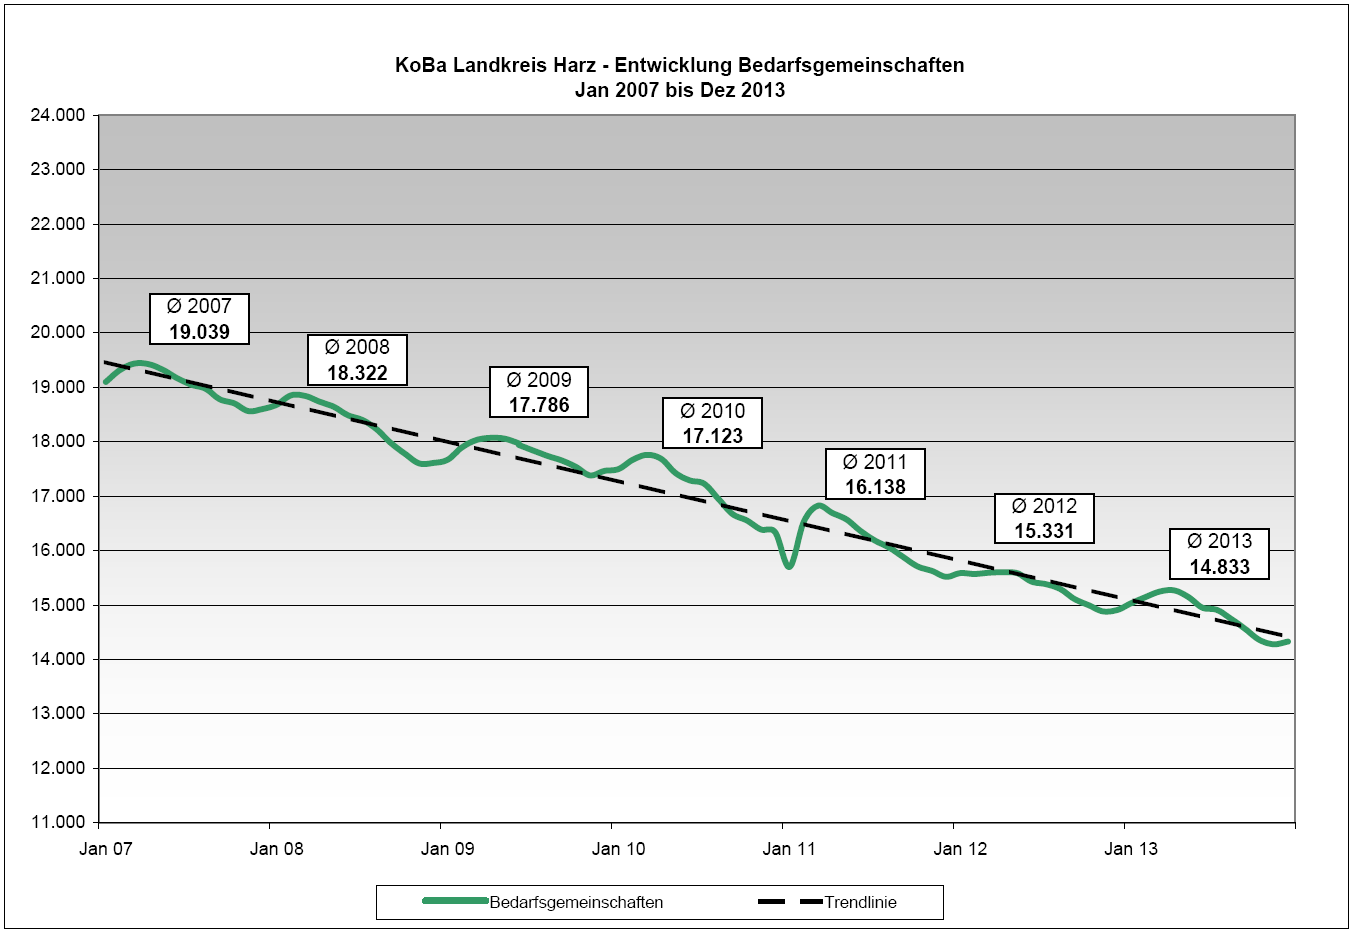 2013 betreute die KoBa durchschnittlich 14.833 Bedarfsgemeinschaften pro Monat. Der Jahresdurchschnitt sank um 498 Bedarfsgemeinschaften (- 3,2 %) im Vergleich zum Vorjahr.